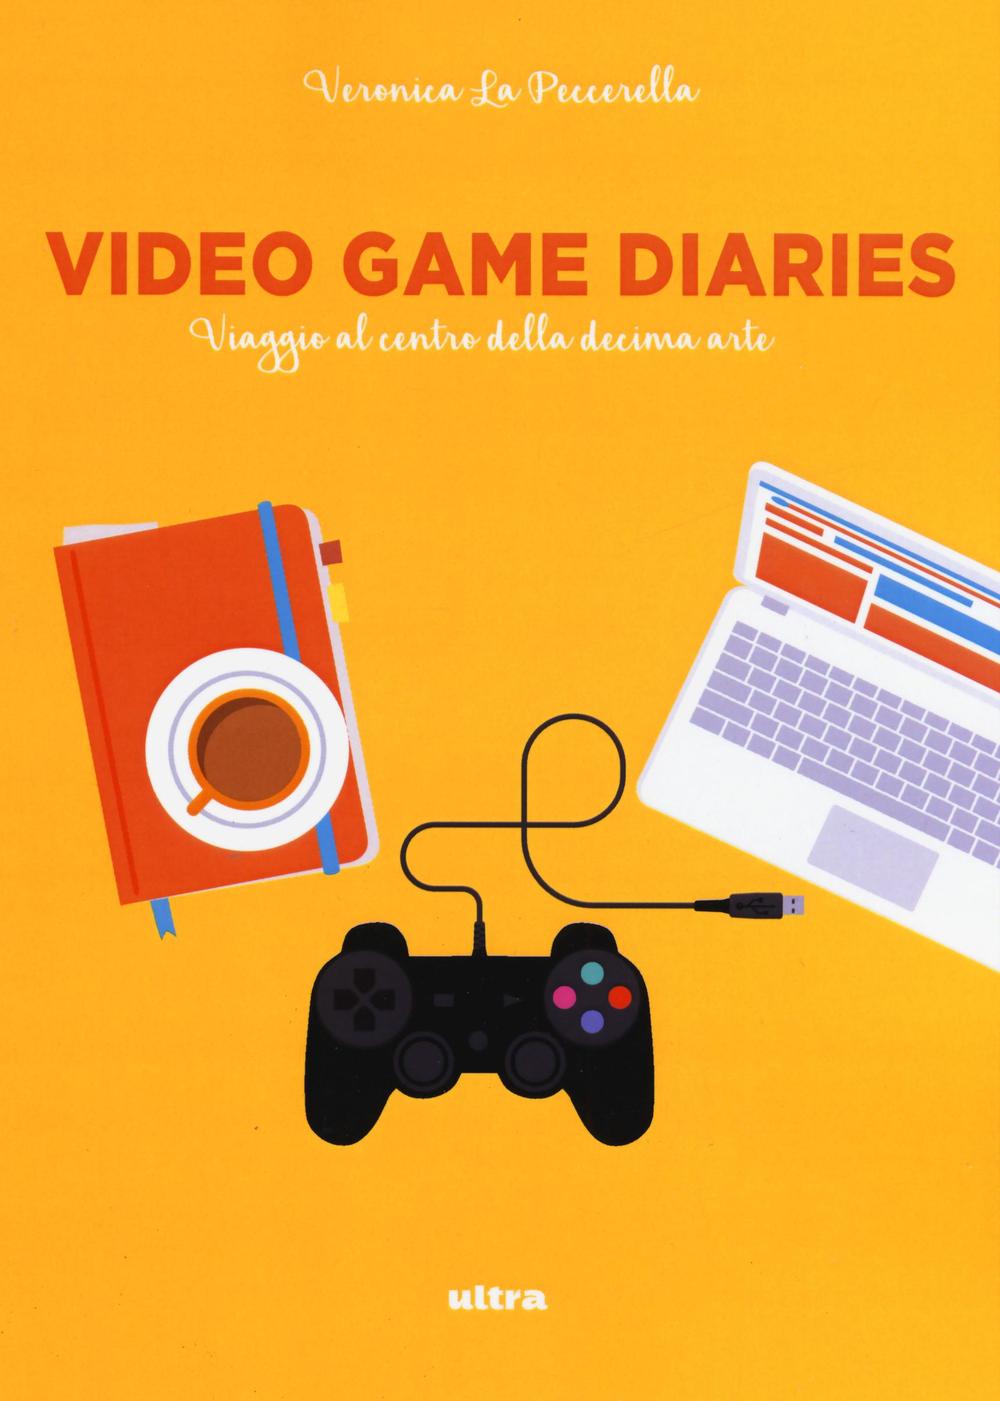 Video game diaries. Viaggio al centro della decima arte